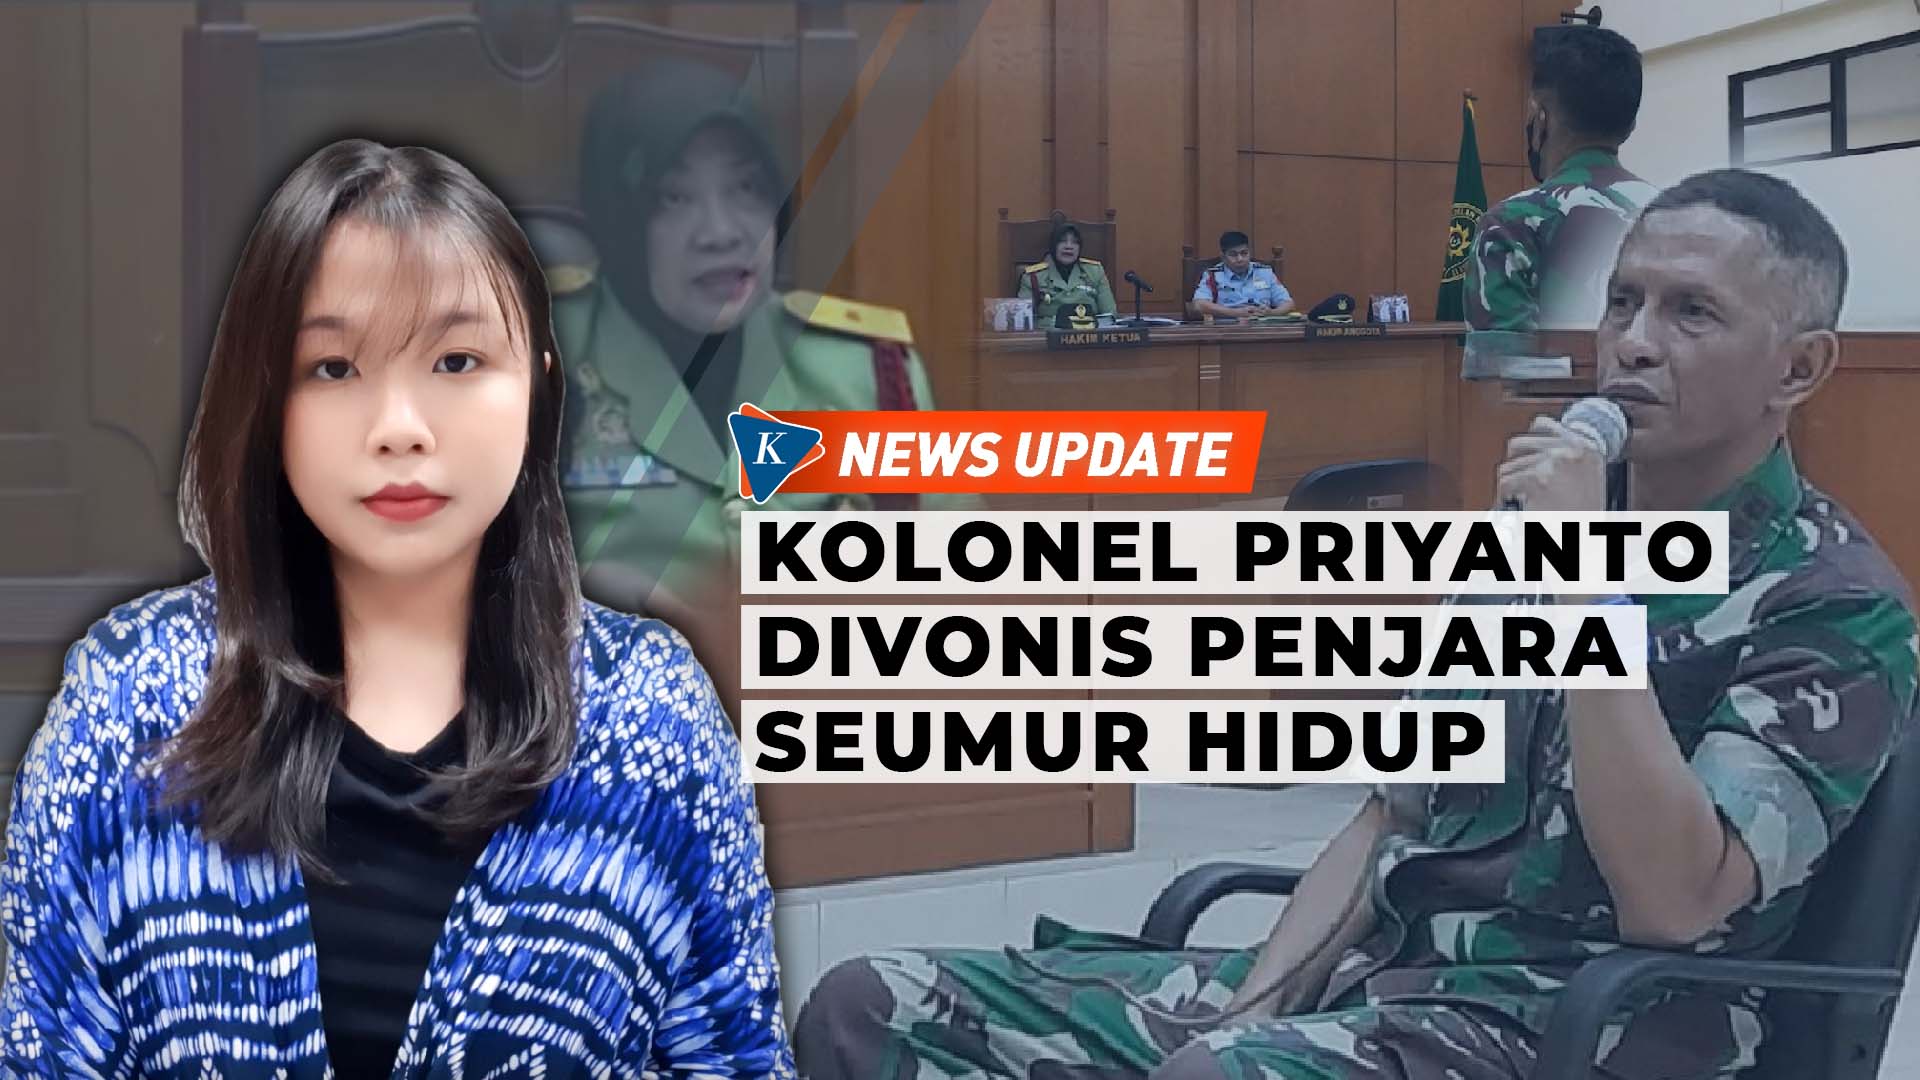 Perjalanan Kasus Kolonel Priyanto hingga Divonis Penjara Seumur Hidup